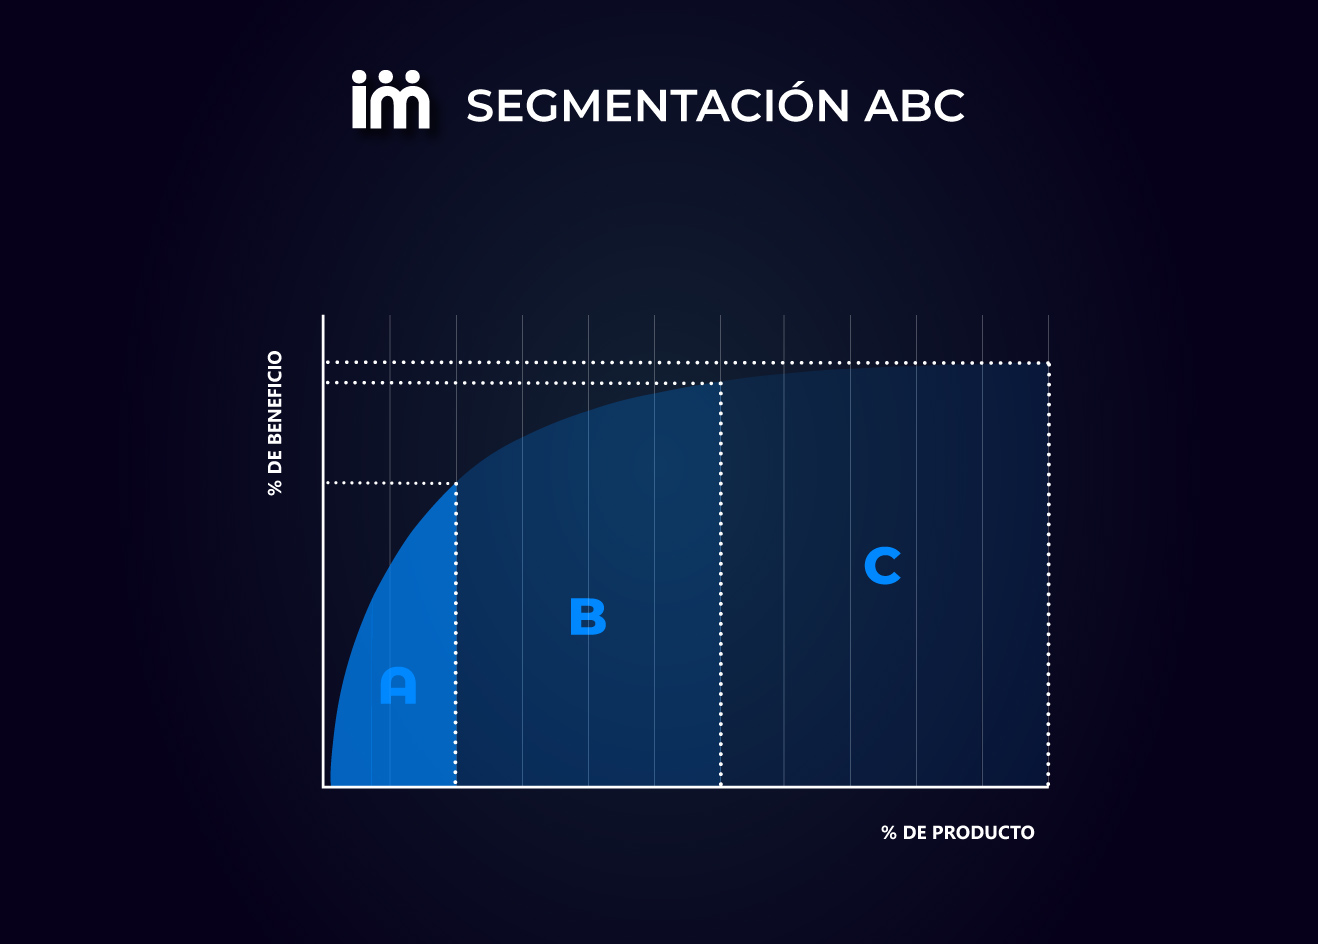 Expresión gráfica de la segmentación ABC.